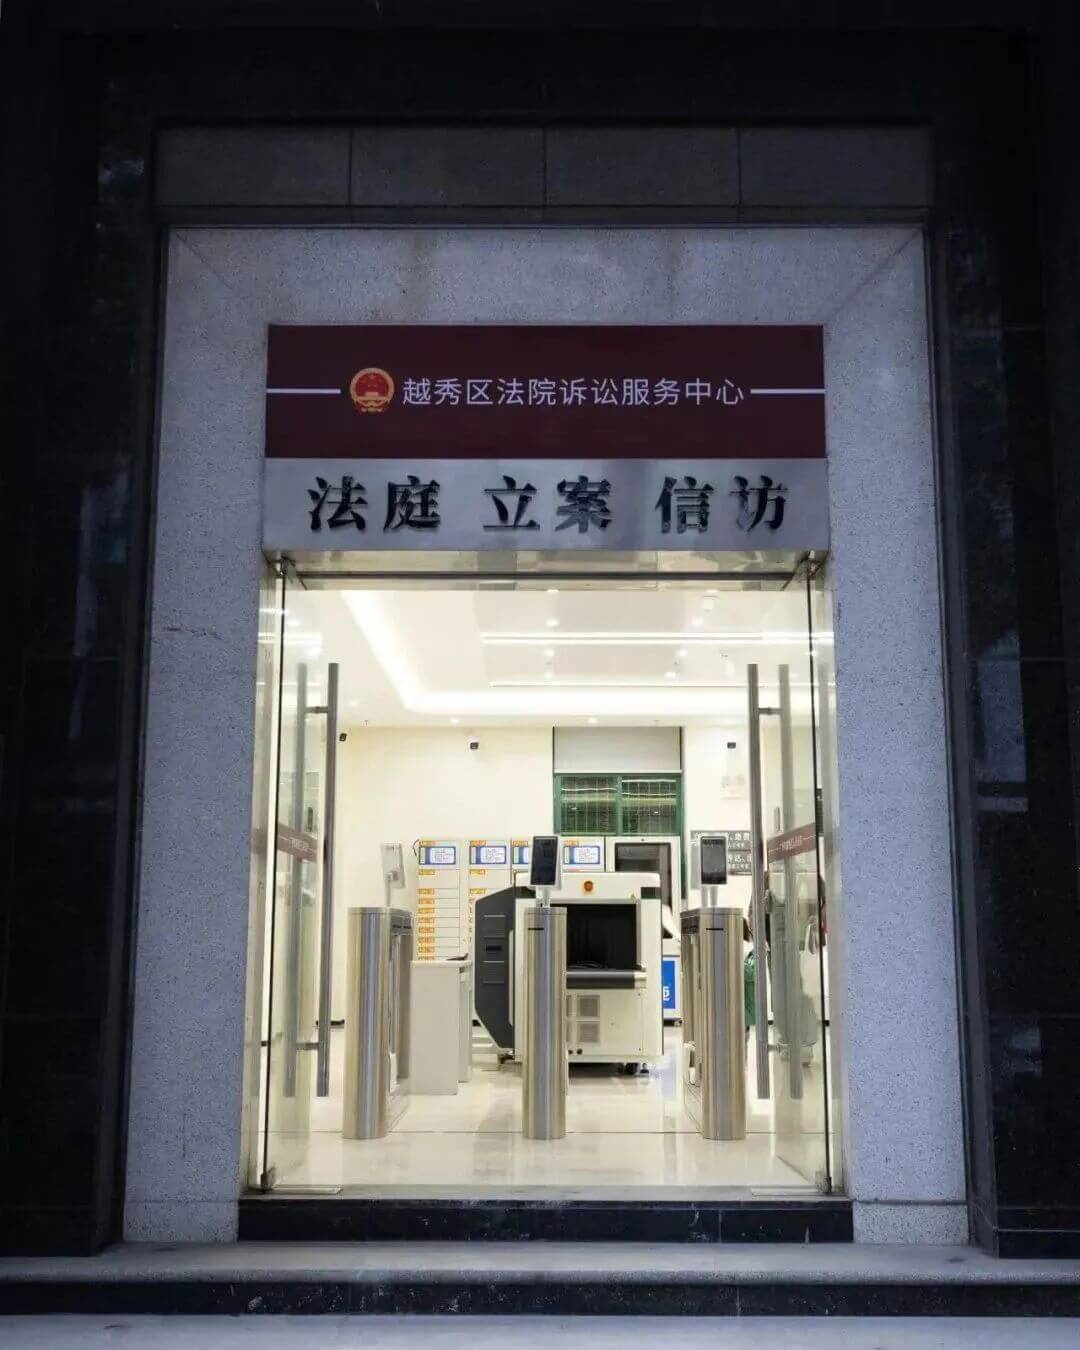 广州市越秀区人民法院搬迁至新址办公的公告